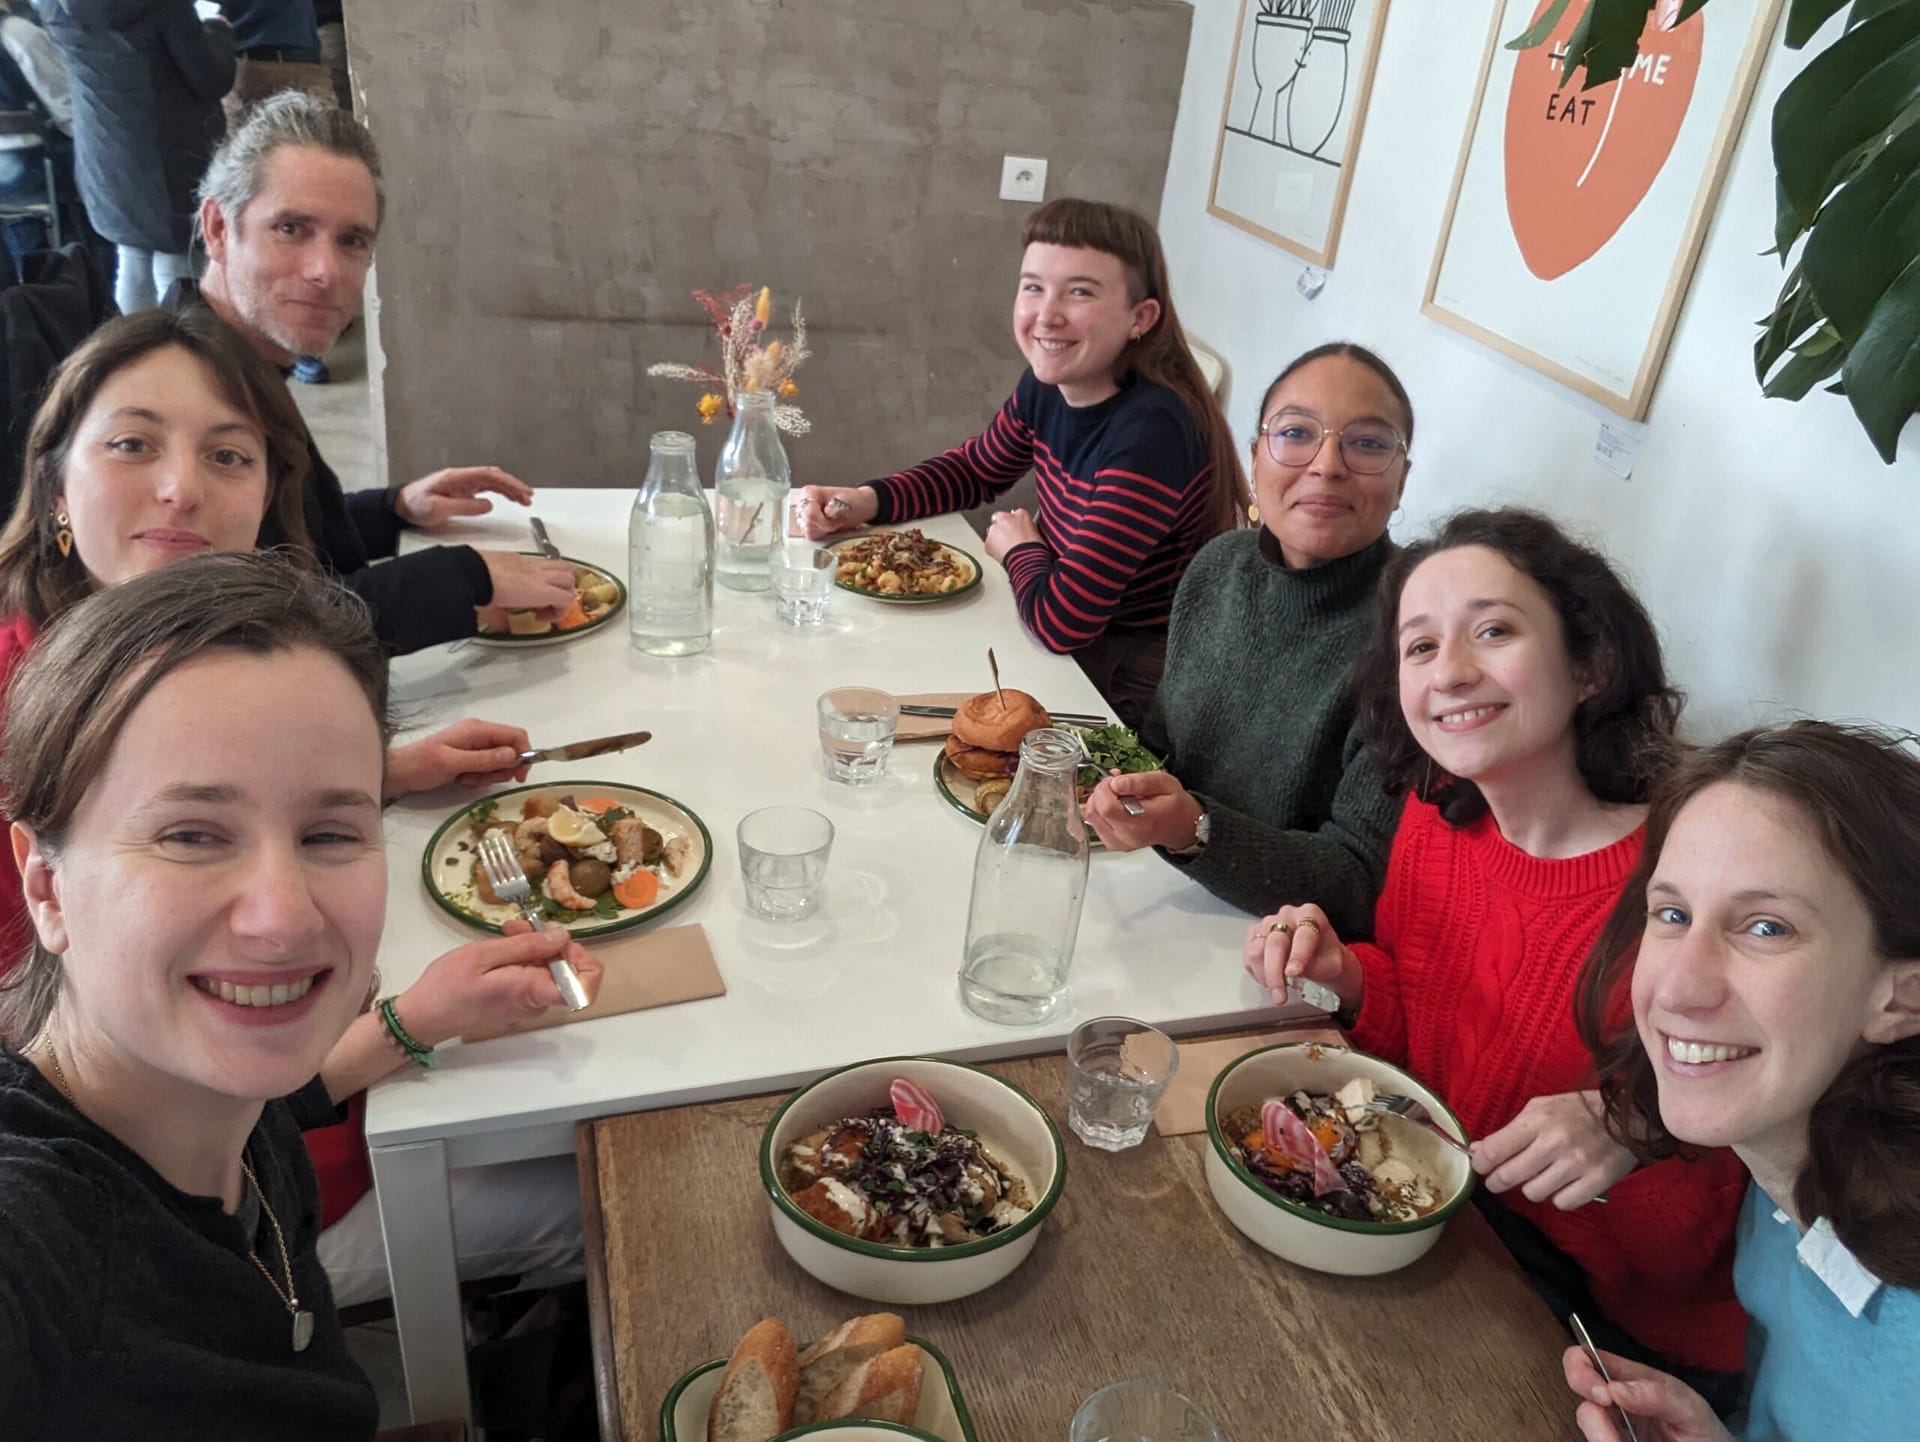 L'image montre 8 personnes assises autour d'une table dans un restaurant, qui soutient et regardent la caméra